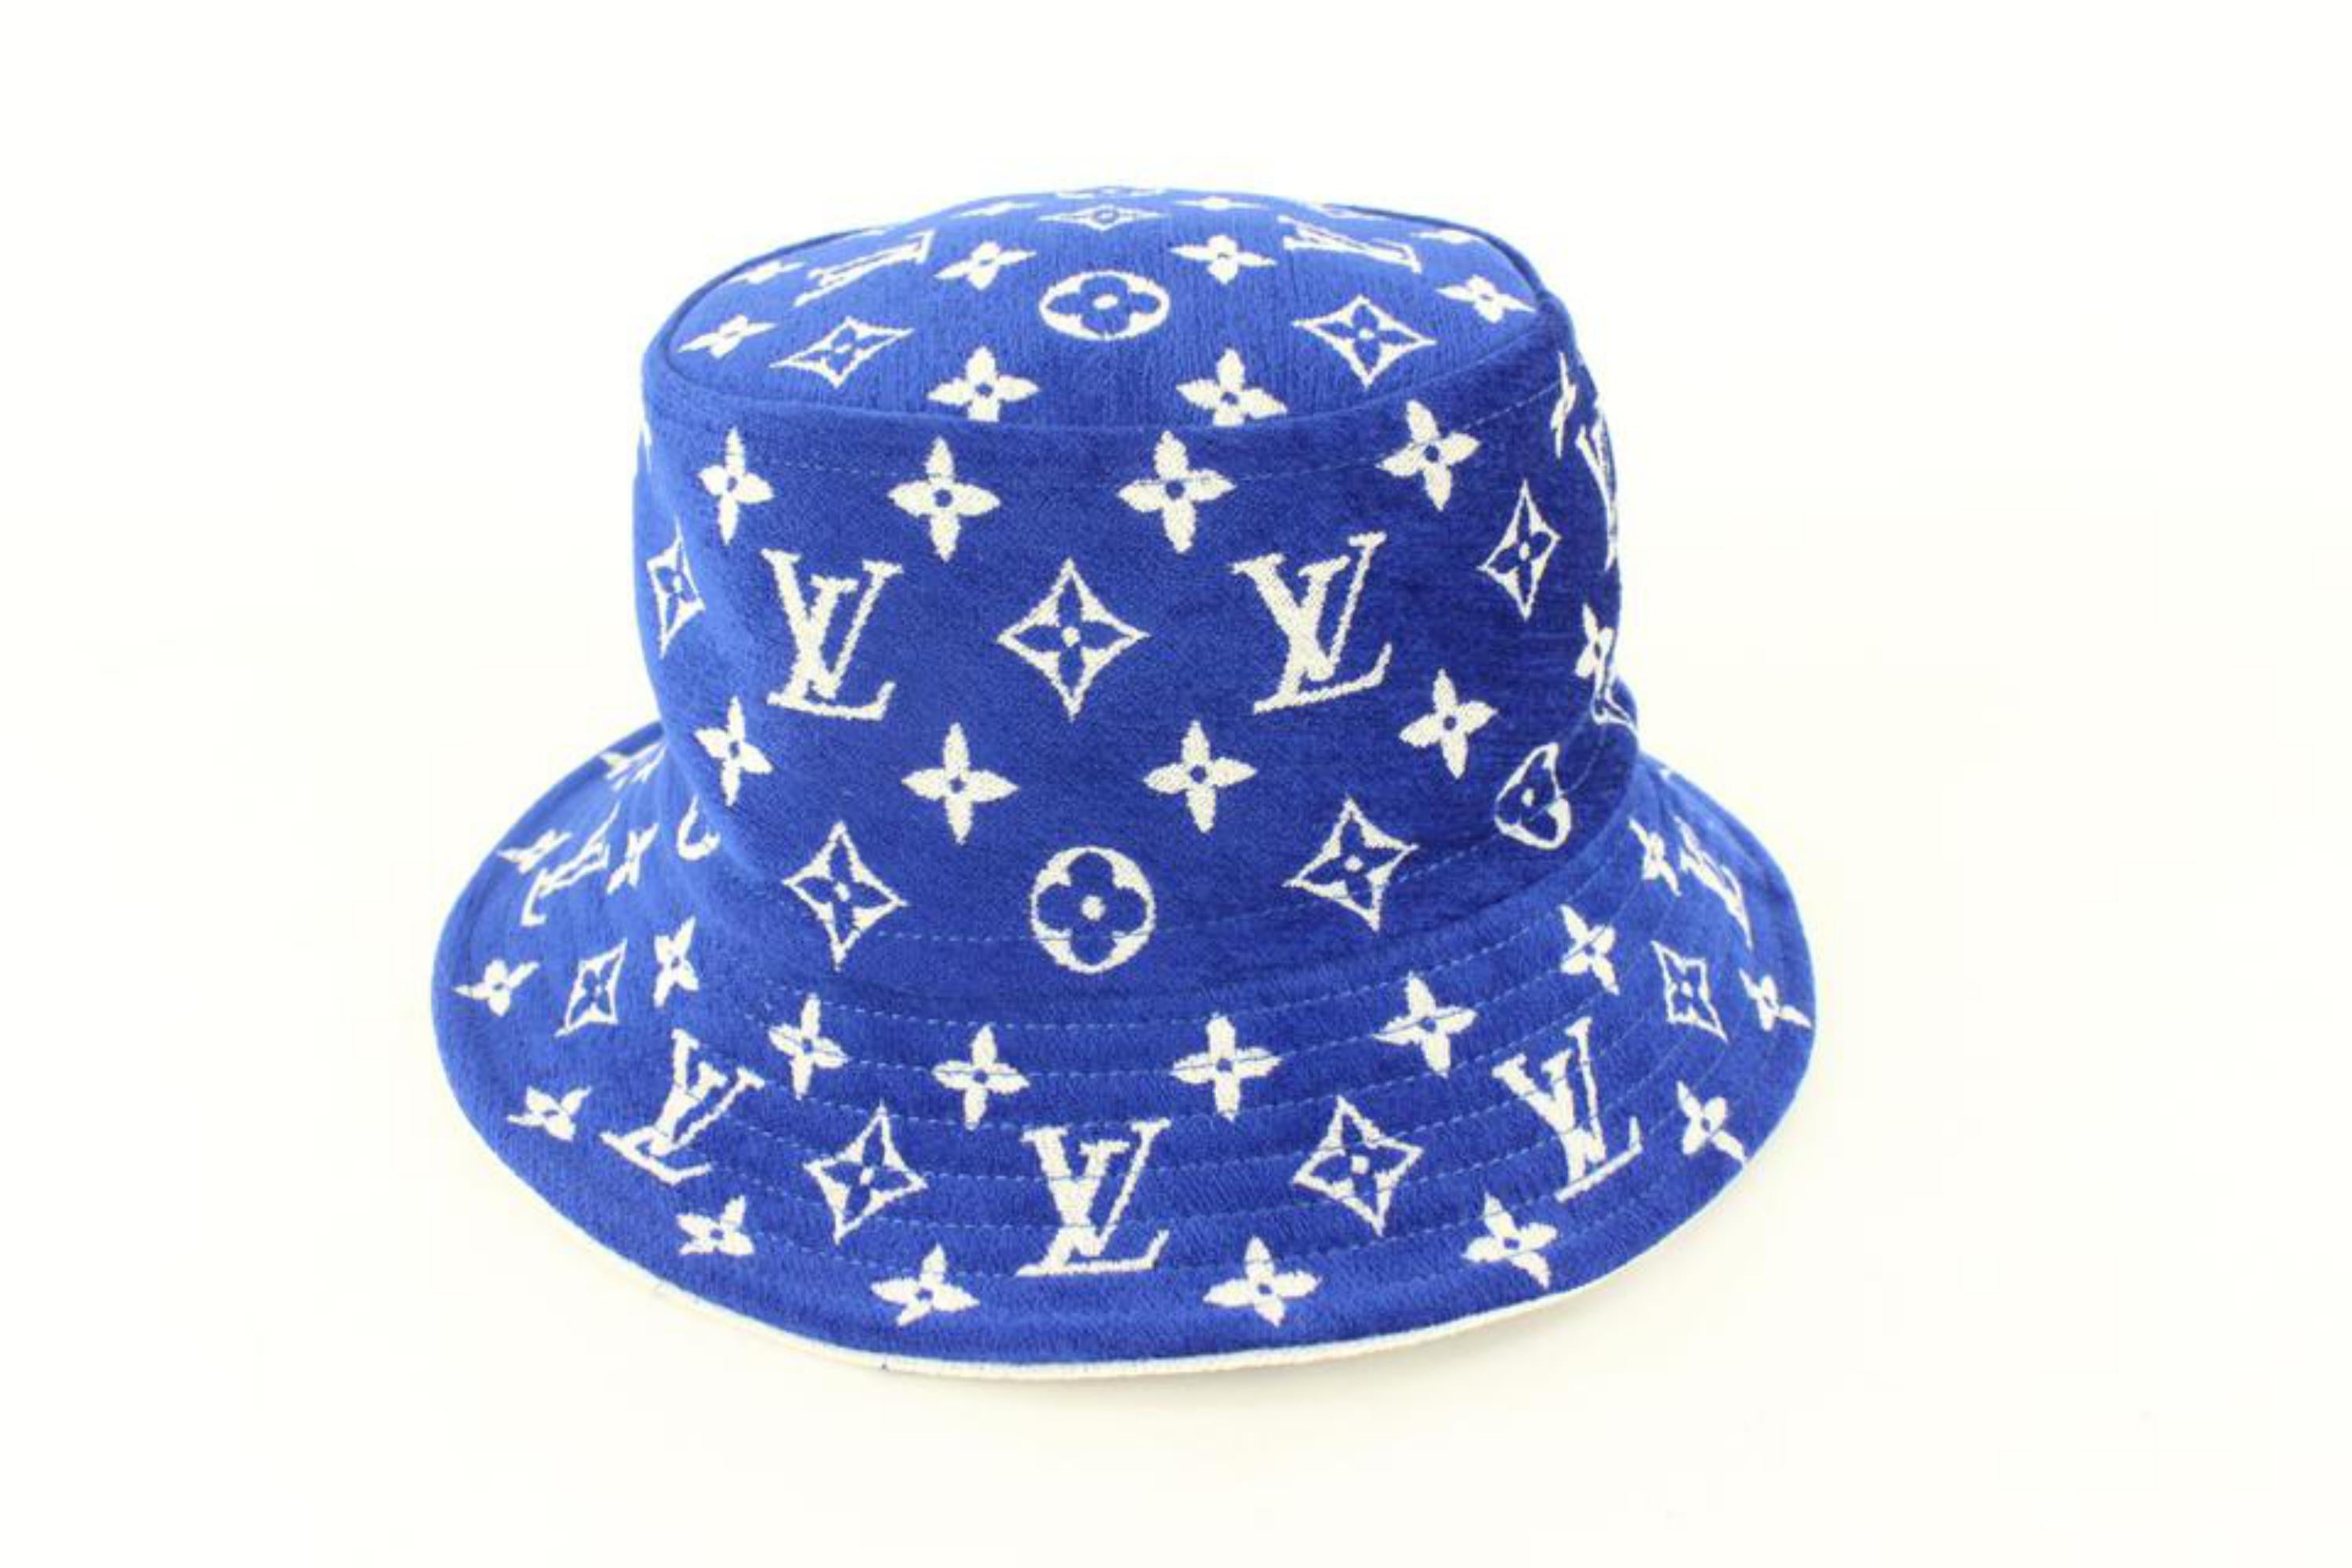 Louis Vuitton Monogram Match Bucket Hat